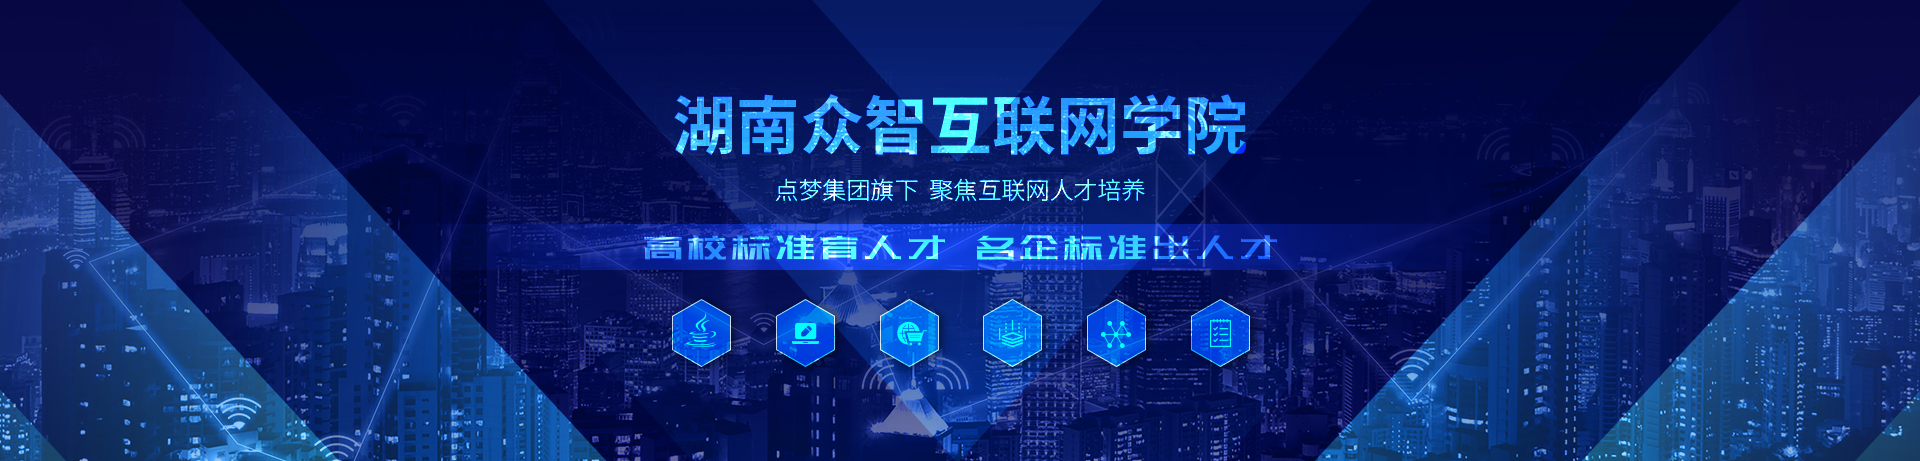 濟寧鑫欣超聲電子設備有限公司